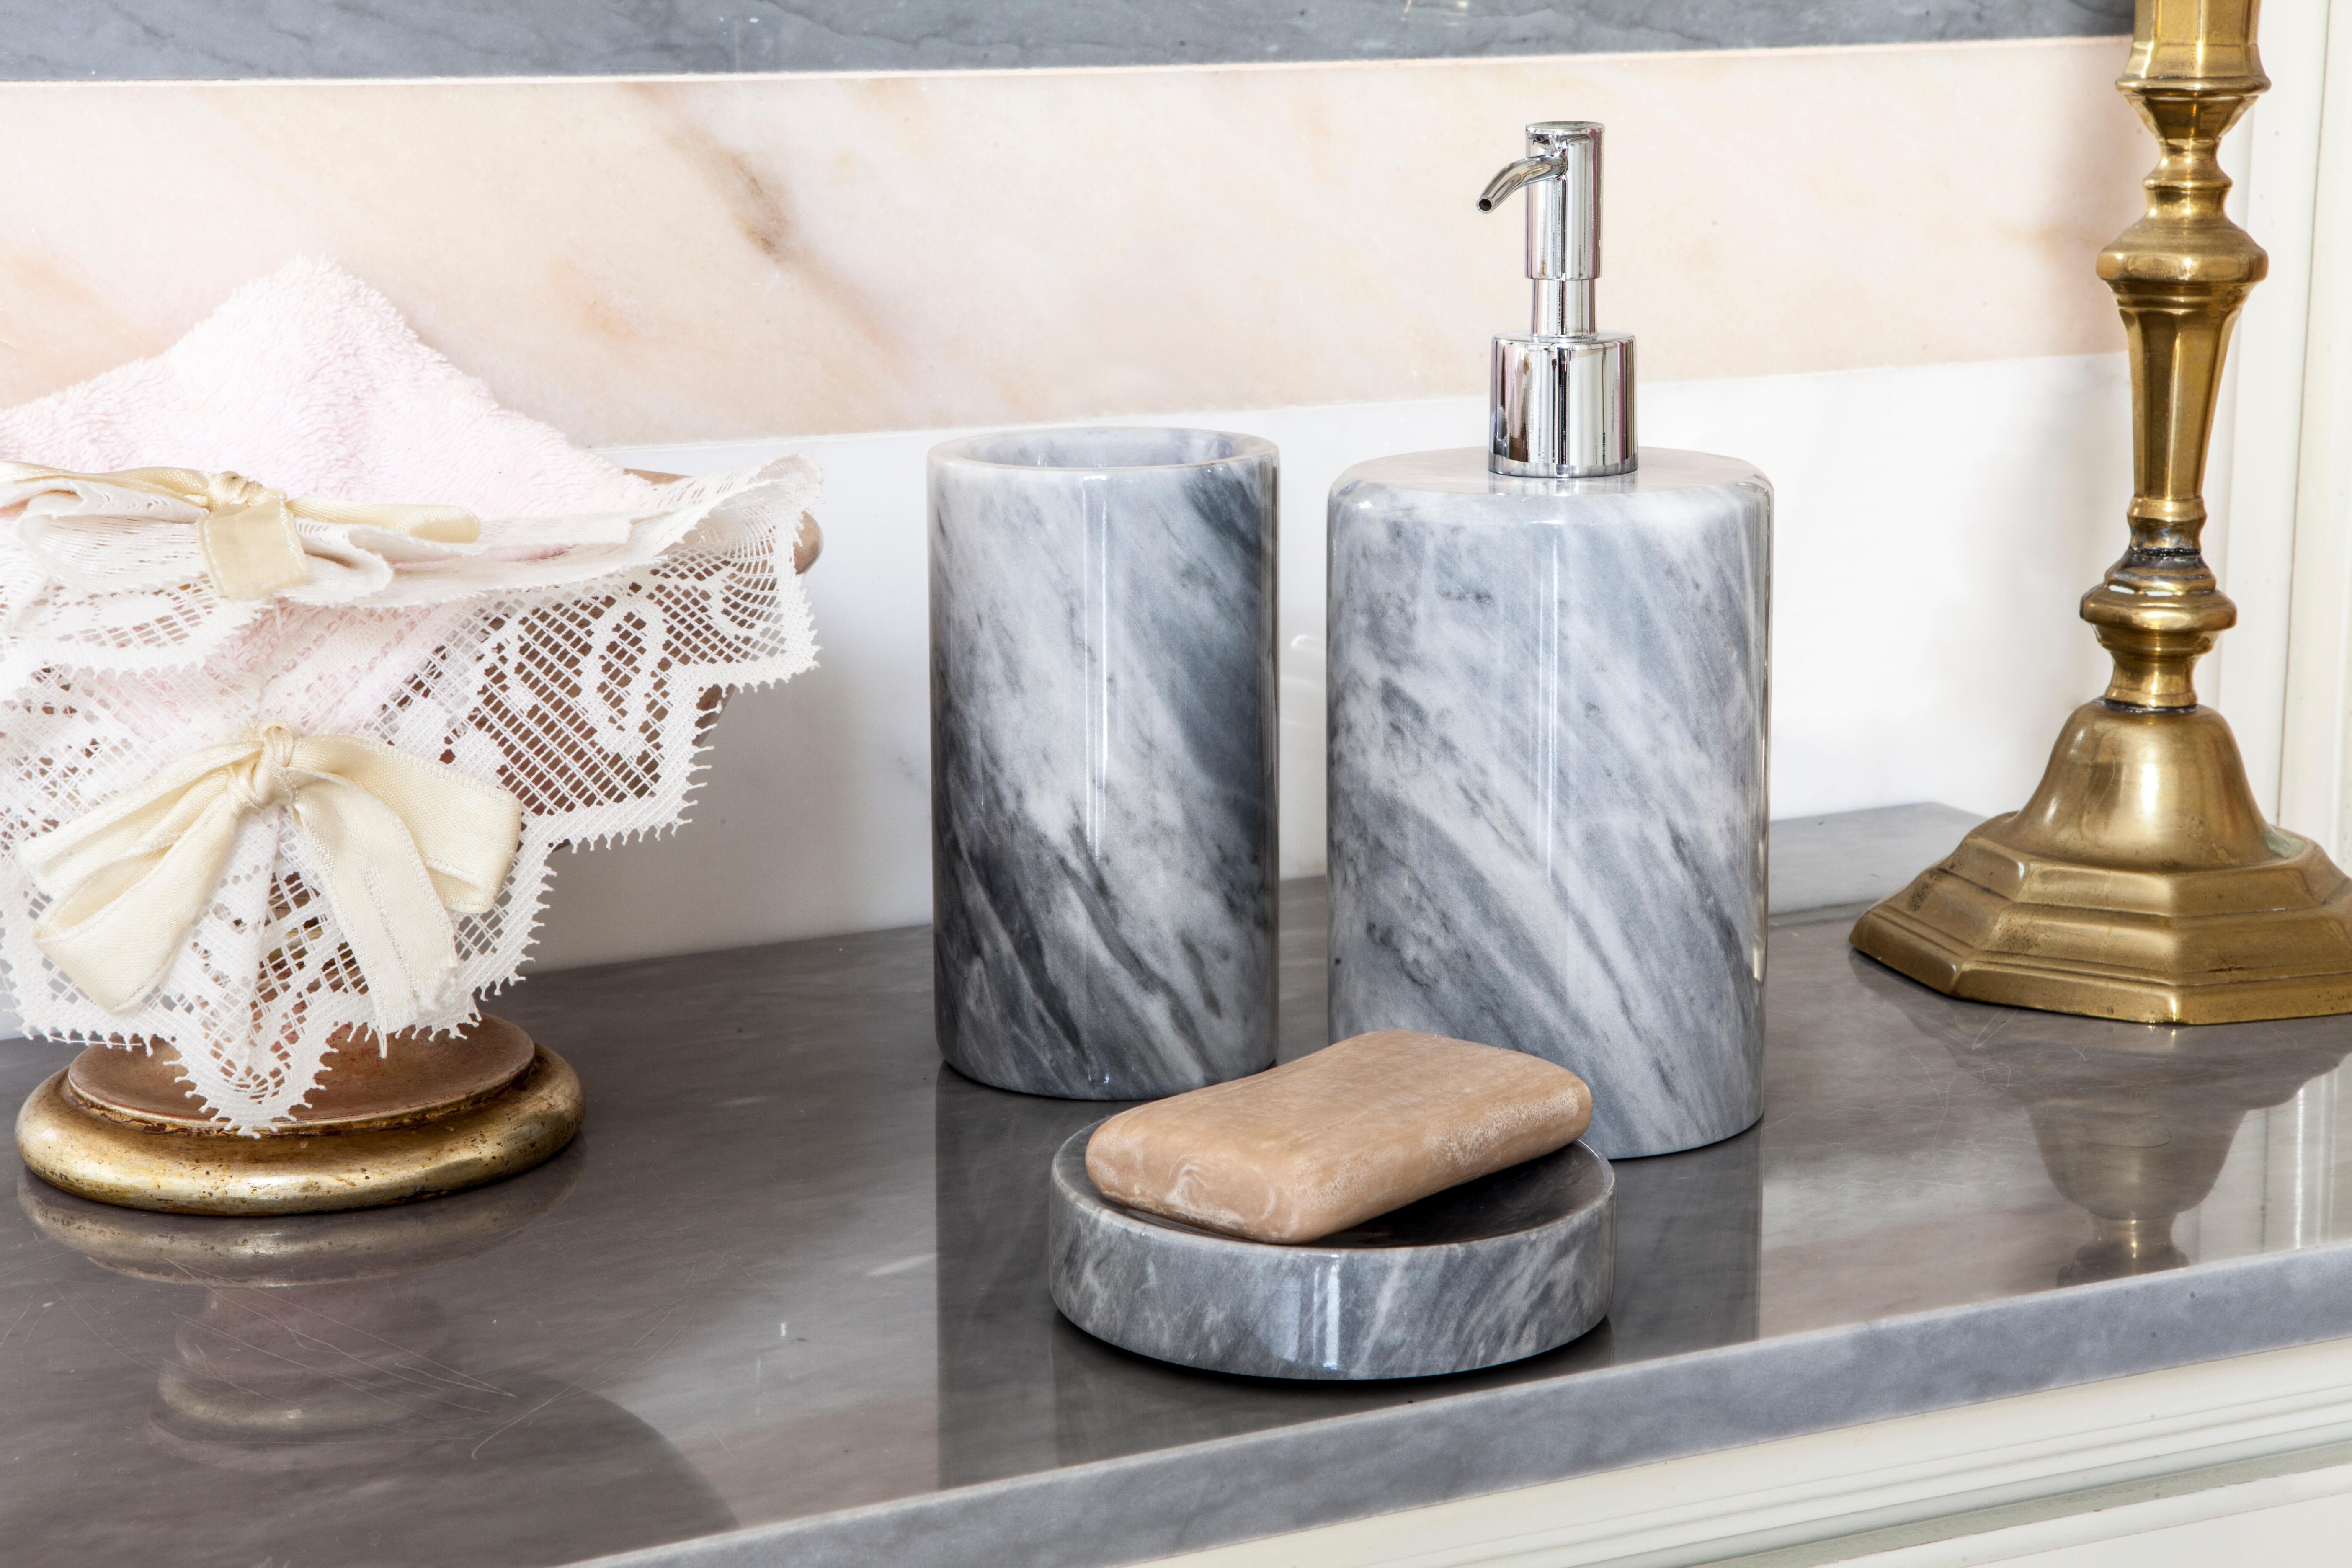 Ein abgerundetes Set für das Badezimmer aus grauem Bardiglio-Marmor, das Folgendes umfasst: Ein Seifenspender (Durchmesser 9 x 19,5 cm), ein Zahnbürstenhalter (Durchmesser 7 x 12 cm), eine Seifenschale (10 x 2 cm).
Jedes Stück ist in gewisser Weise